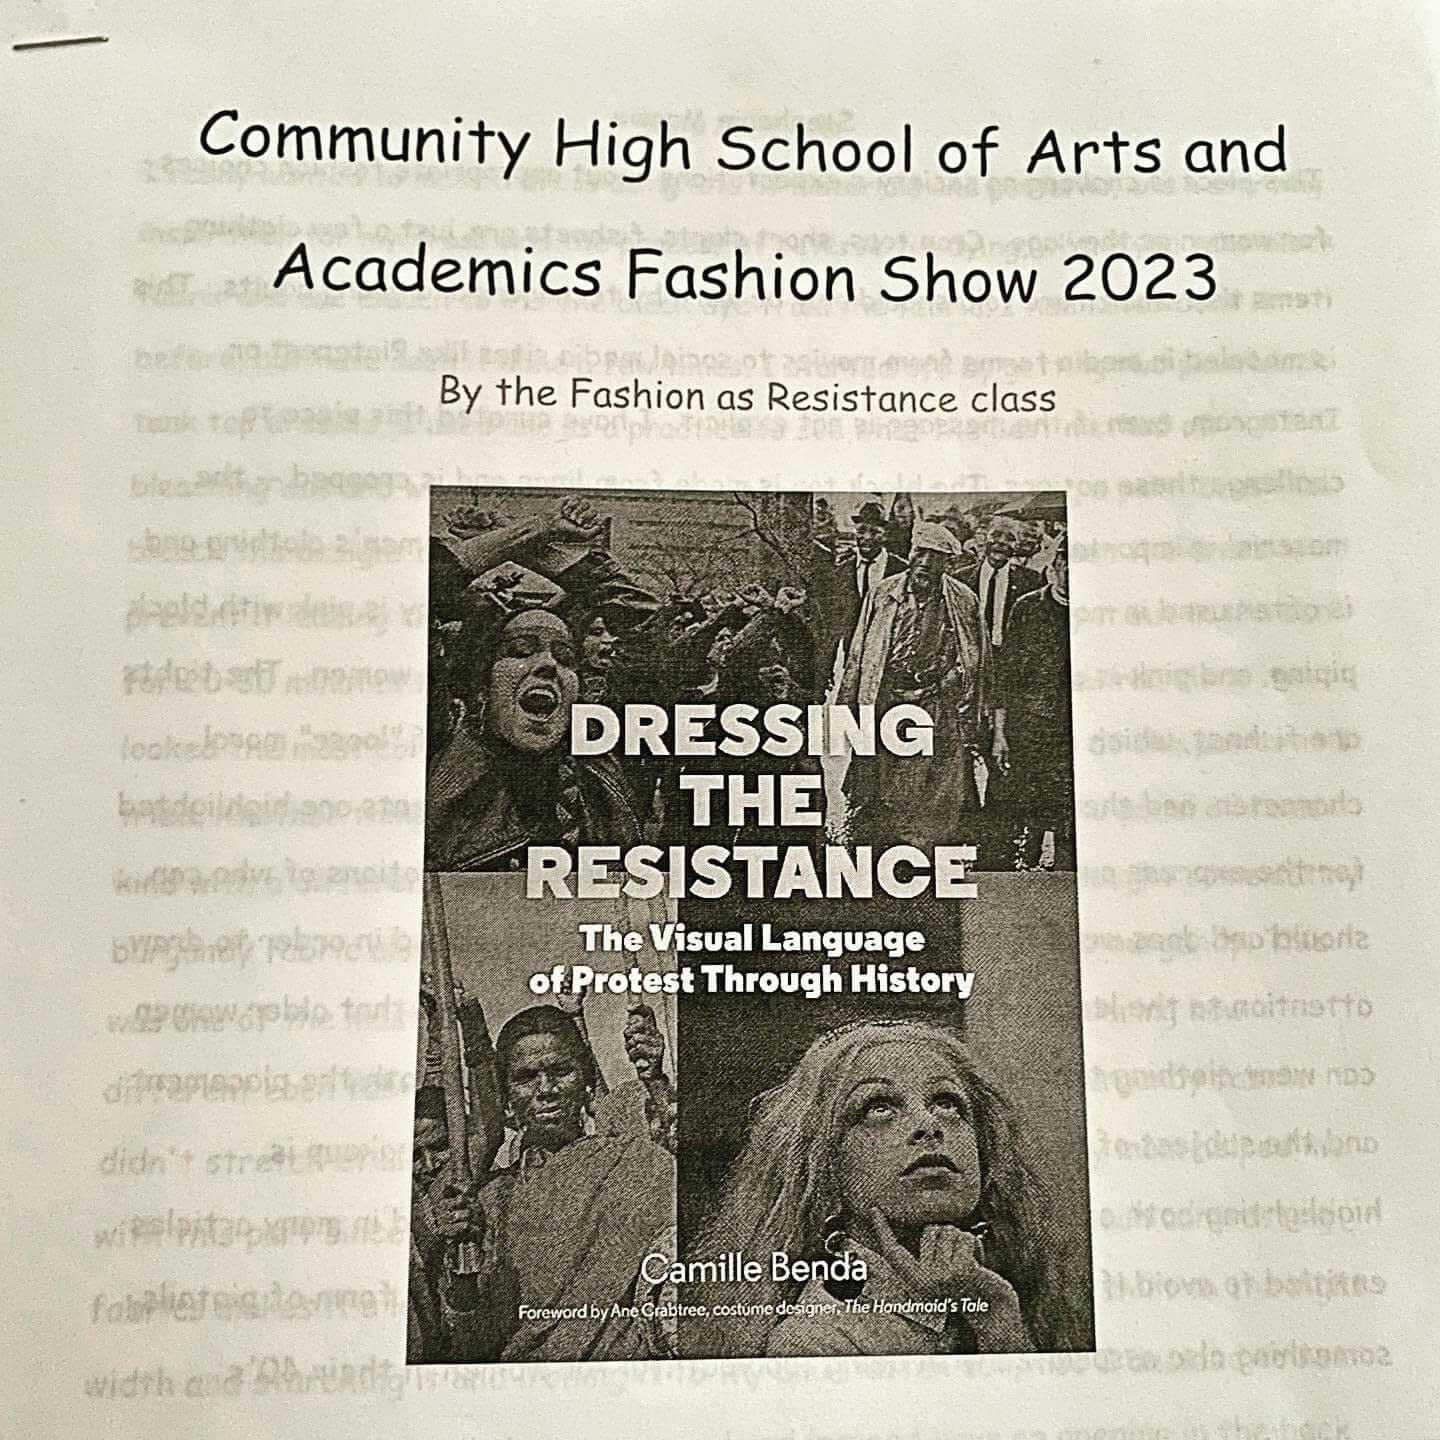 Fashion as Resistance Program